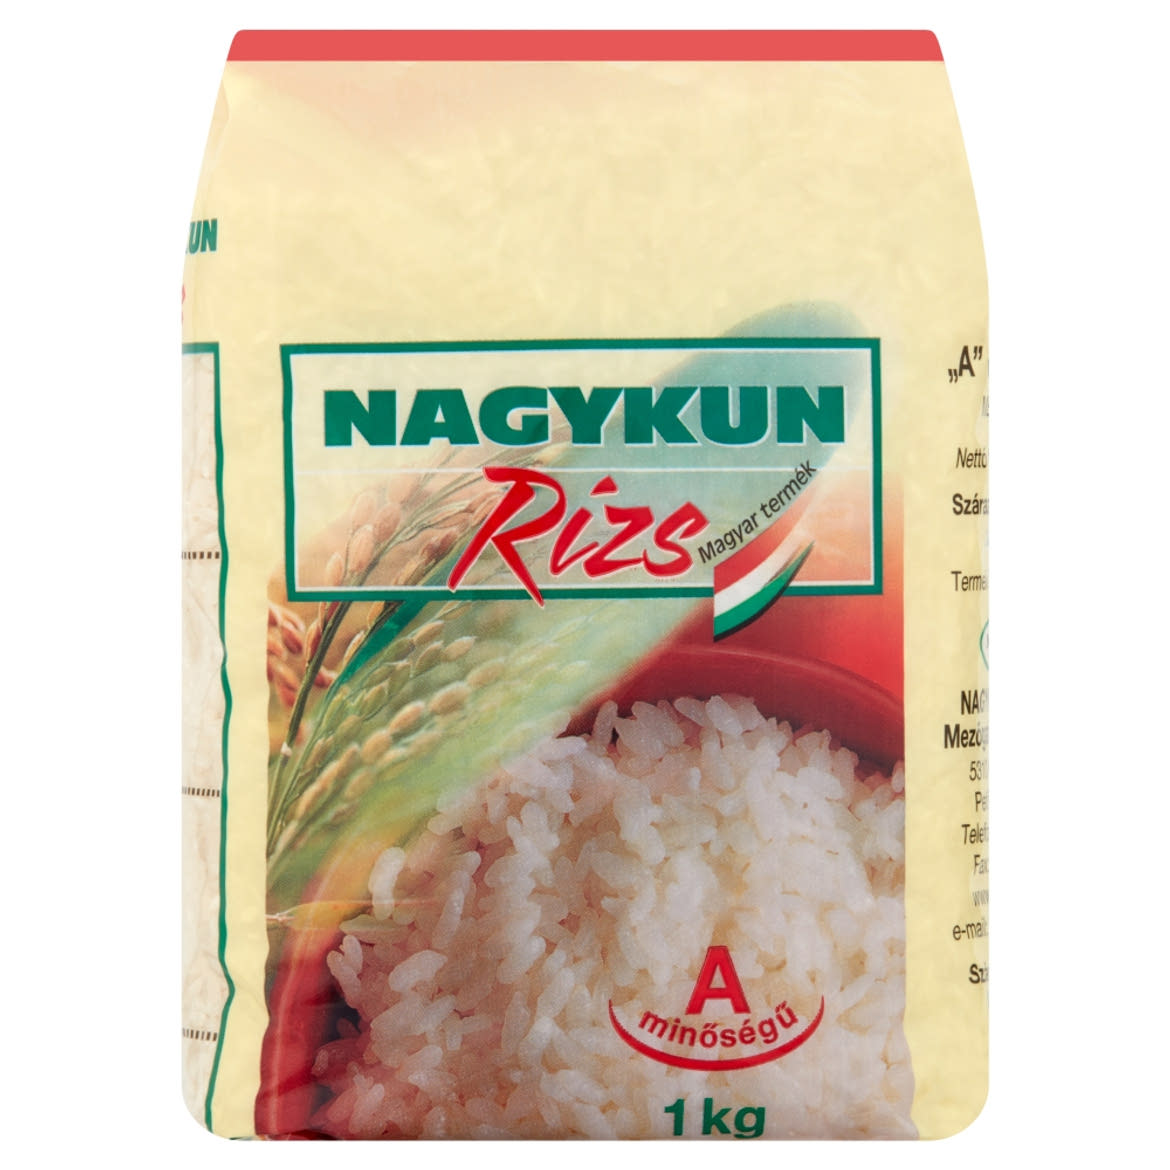 Nagykun „A" minőségű rizs